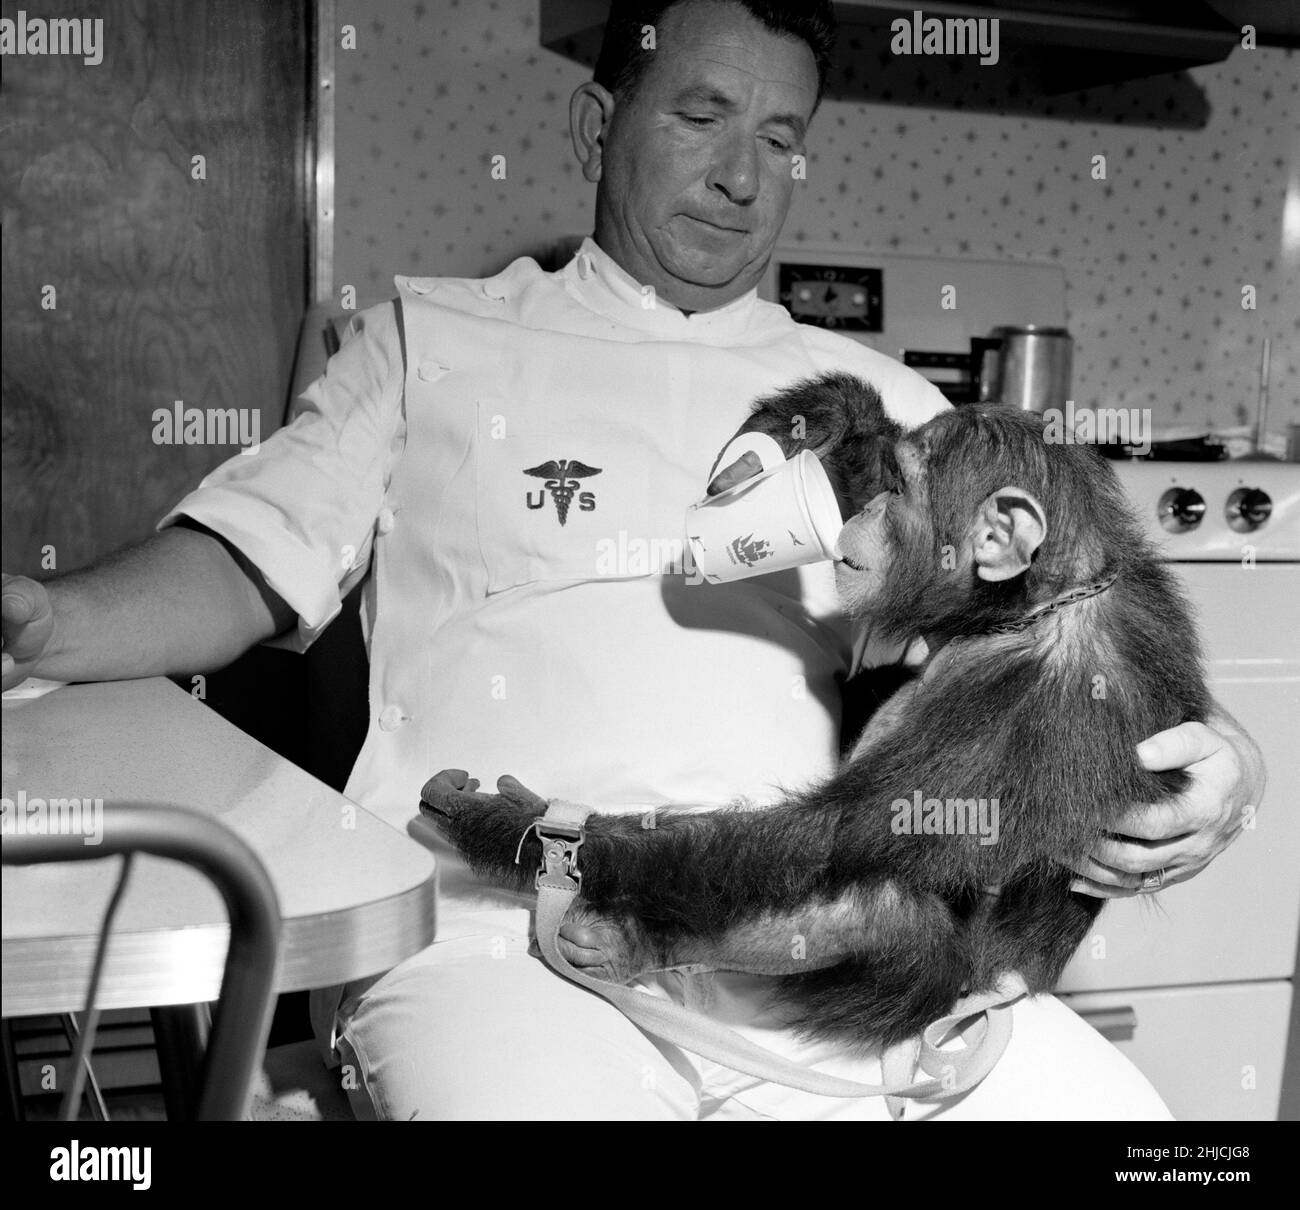 Enos avec son maître buvant de la tasse.Enos (d.Le 4 novembre 1962) a été le chimpe de 2nd lancé dans l'espace et le premier à atteindre l'orbite de la Terre.Le vol d'Enos a eu lieu le 29 novembre 1961.Son entraînement était plus intense pour lui que pour son prédécesseur Ham, parce qu'Enos a été exposé à l'apesanteur et à une GS plus élevée pendant de plus longues périodes de temps.Sa formation comprenait des instructions psychomotrices et des vols d'avion.Enos est mort de dysenterie liée à la shigellose, qui était résistante aux antibiotiques connus à l'époque.Les pathologistes n'ont signalé aucun symptôme qui pourrait être attribué ou lié à son vol spatial. Banque D'Images